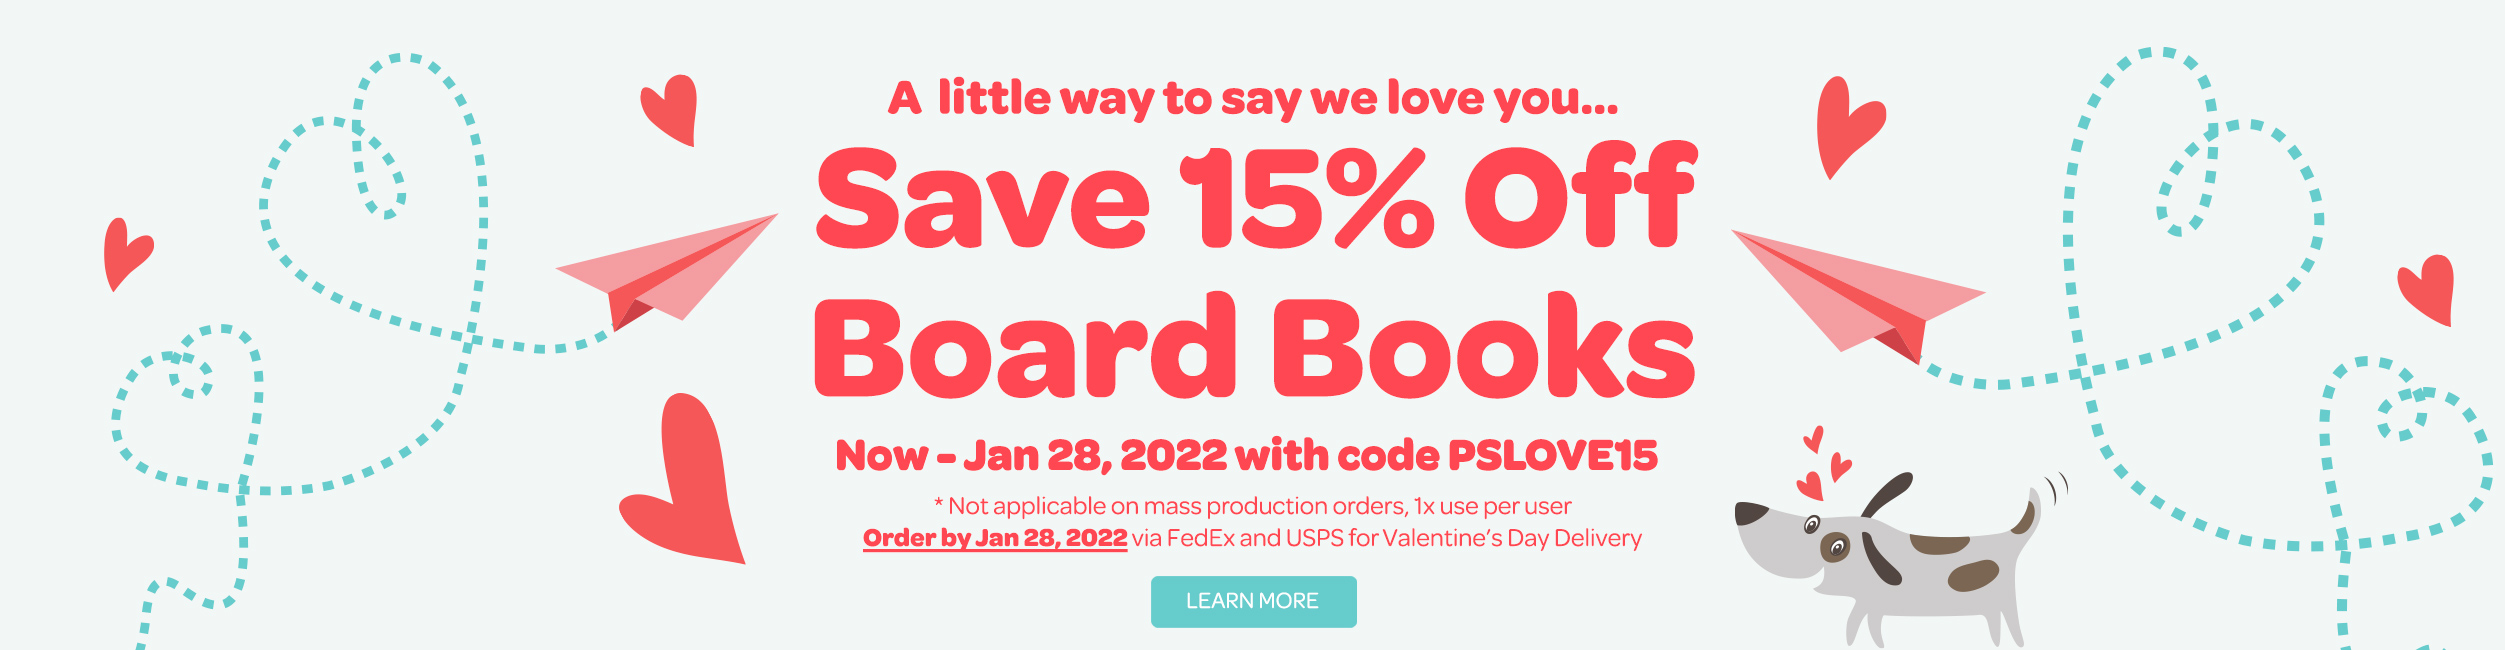 Save 15% Off Board Books